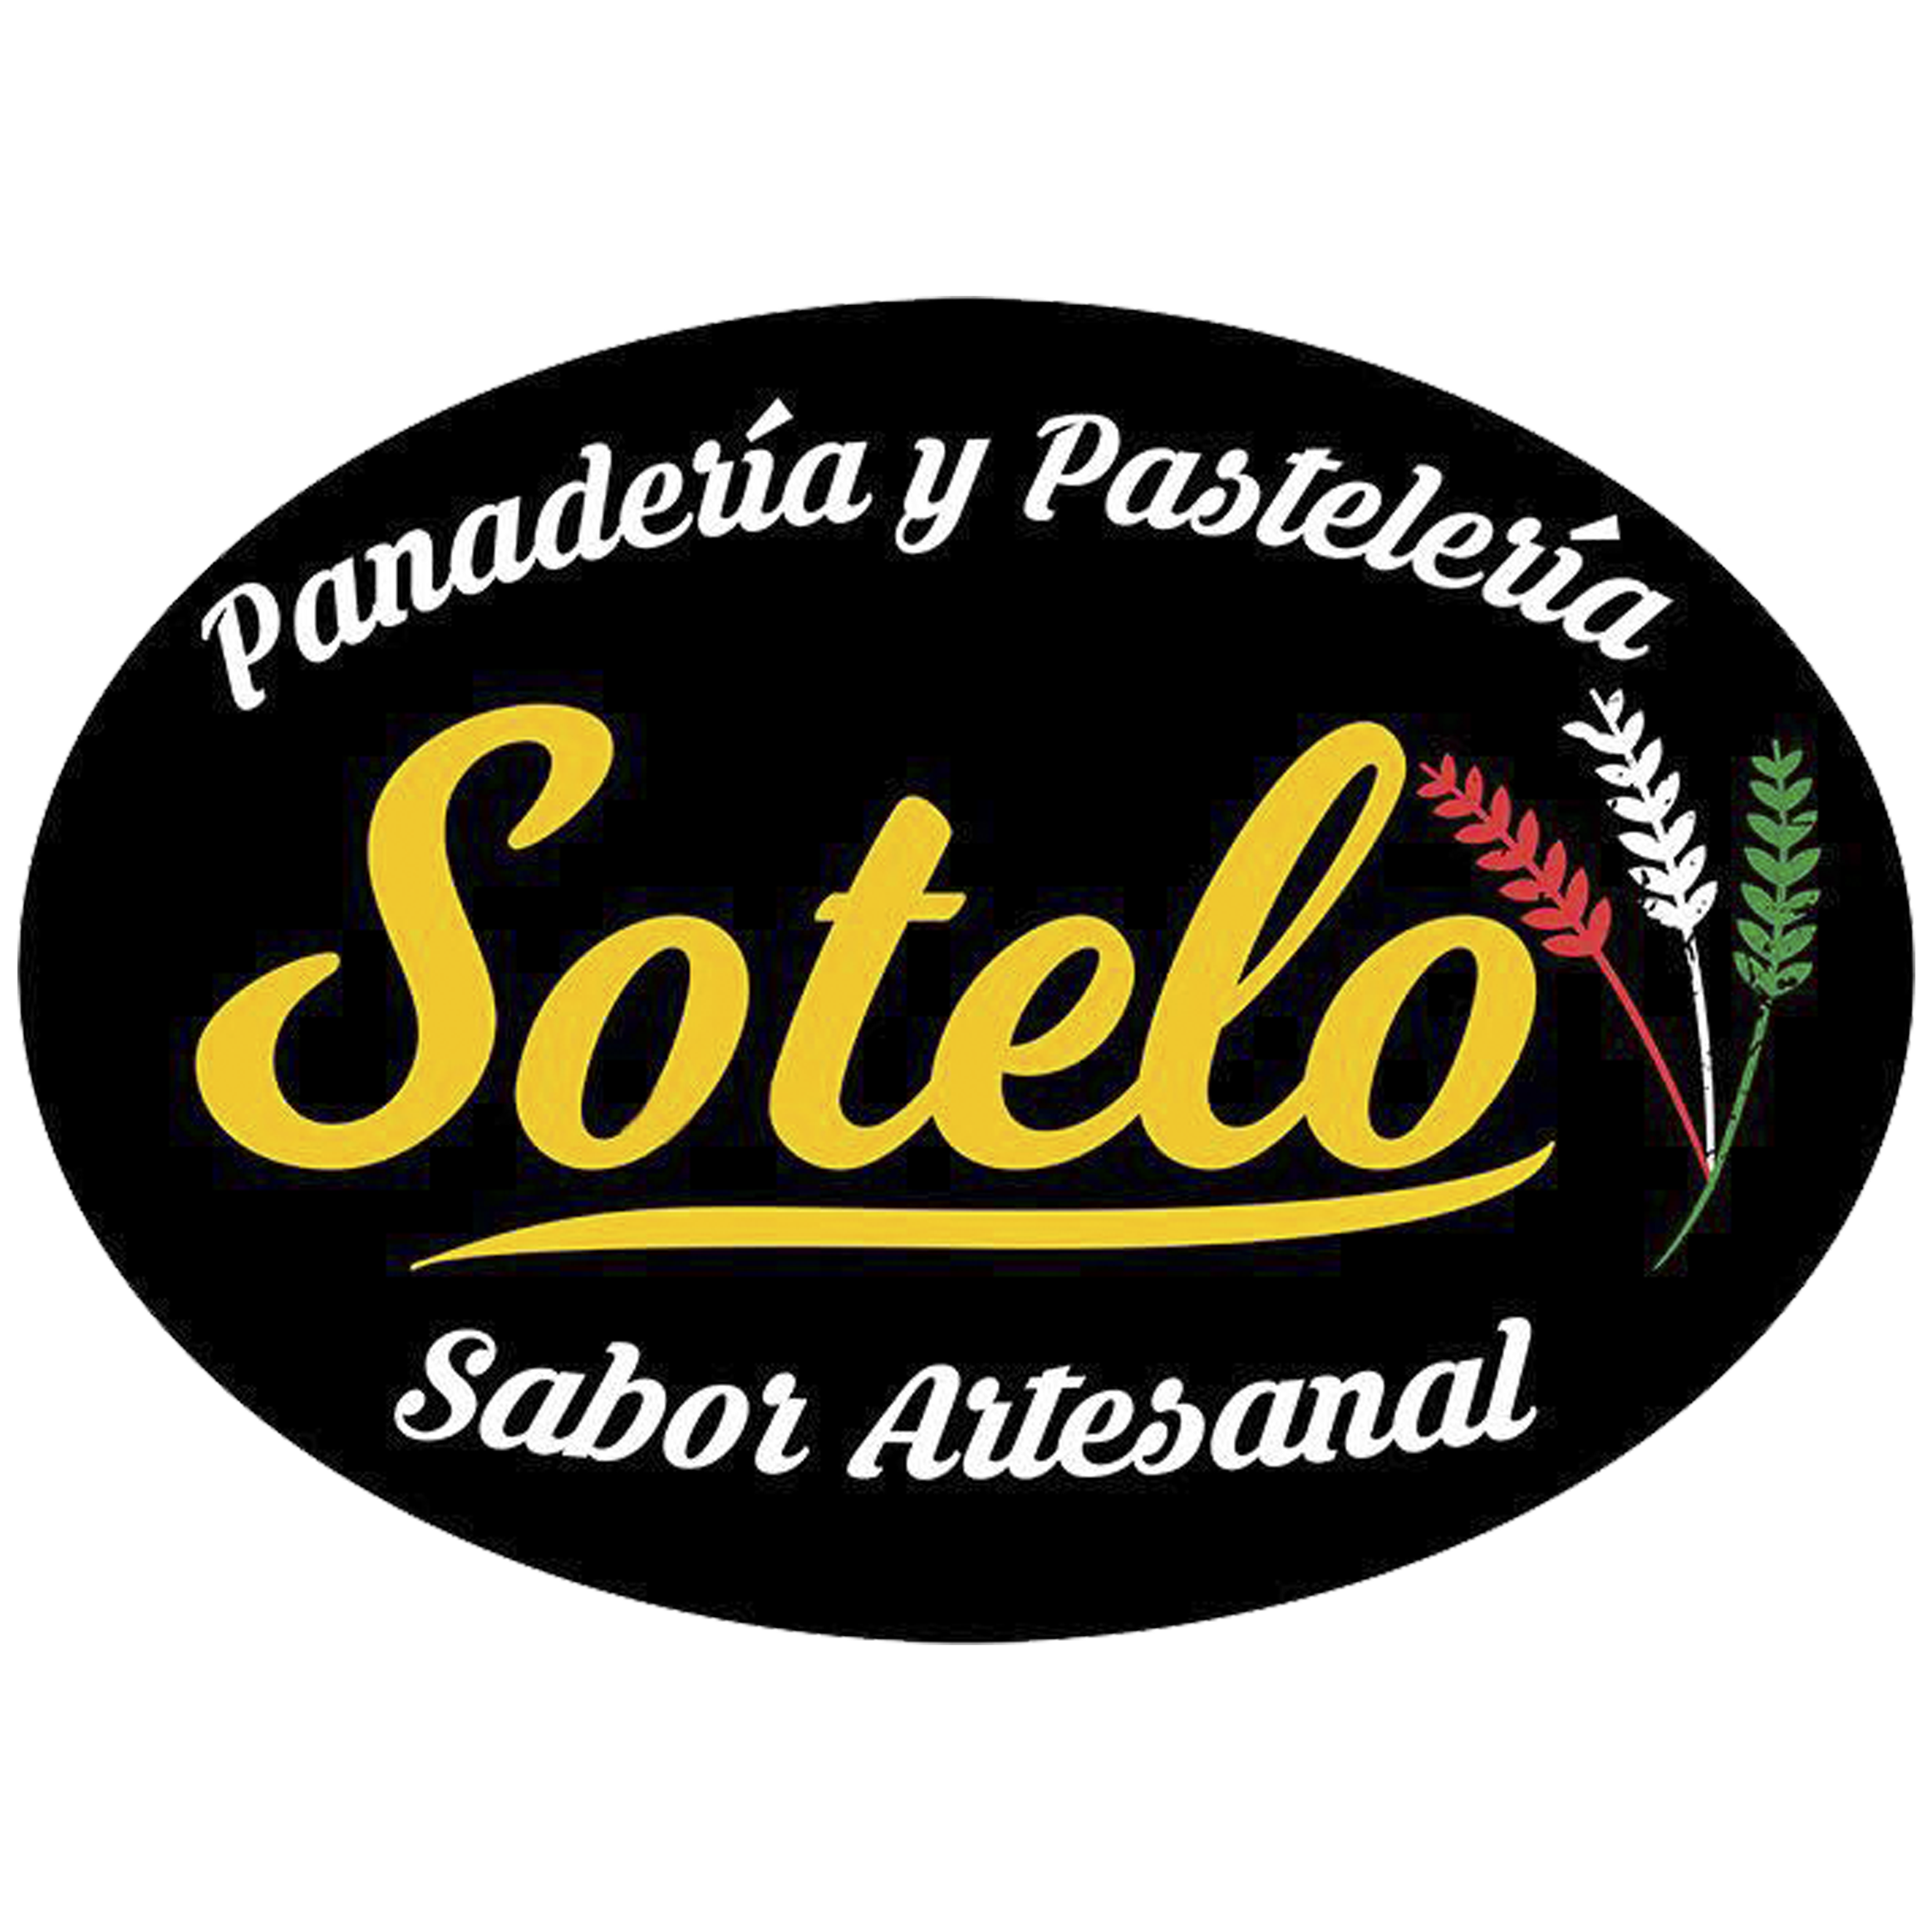 PANADERIA Y PASTELERIA SOTELO